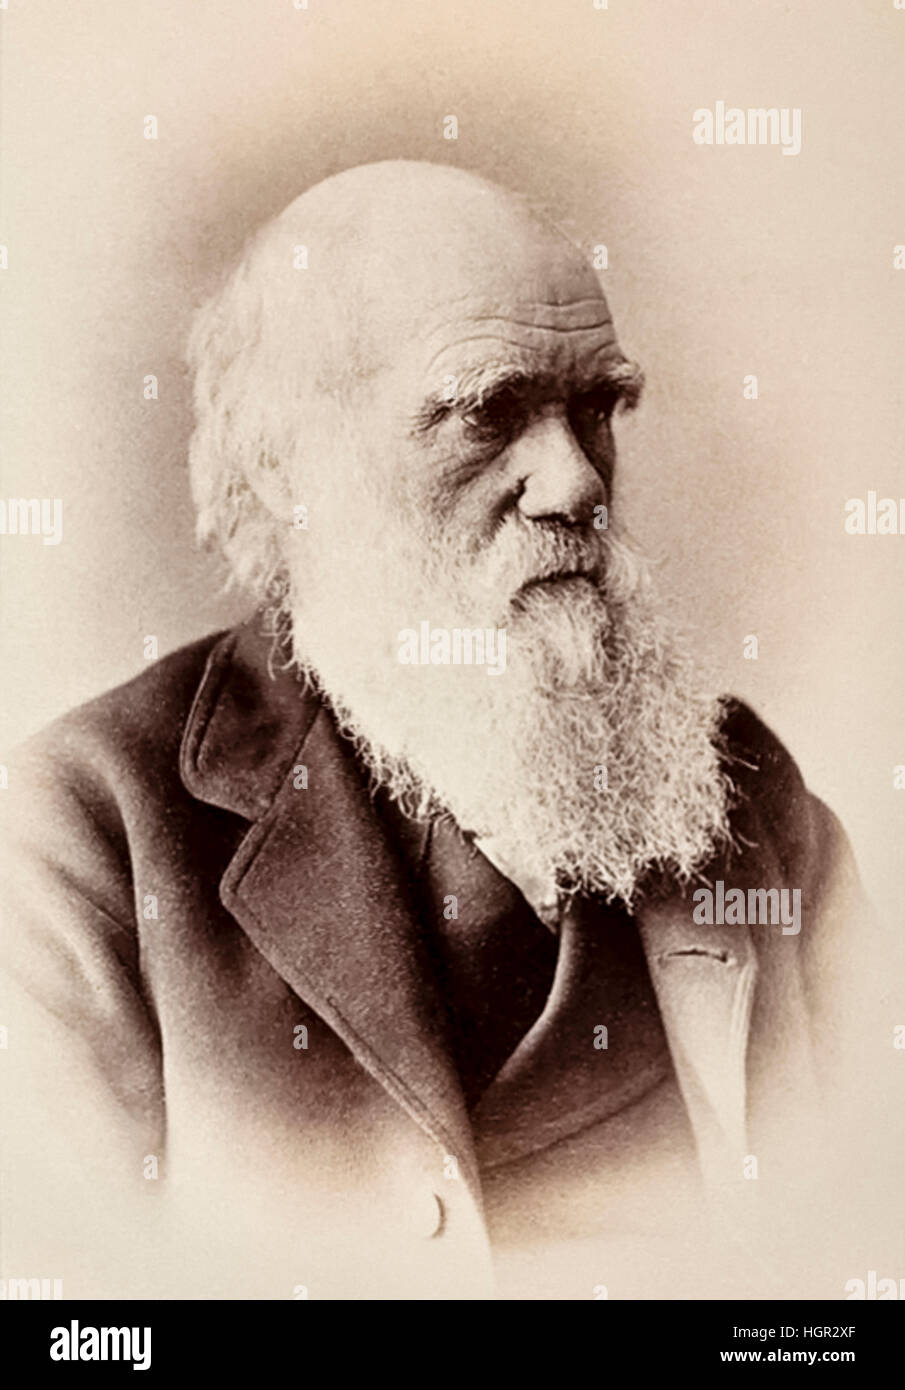 Charles Darwin (1809-1882) naturalista inglese che per primo ha impostato la sua teoria di evoluzione e di selezione naturale nel suo libro "sull'origine delle specie", pubblicato nel 1859. Fotografia scattata nel 1881, l'anno il Museo di Storia Naturale aperto a Londra. Vedere la descrizione per maggiori informazioni. Foto Stock